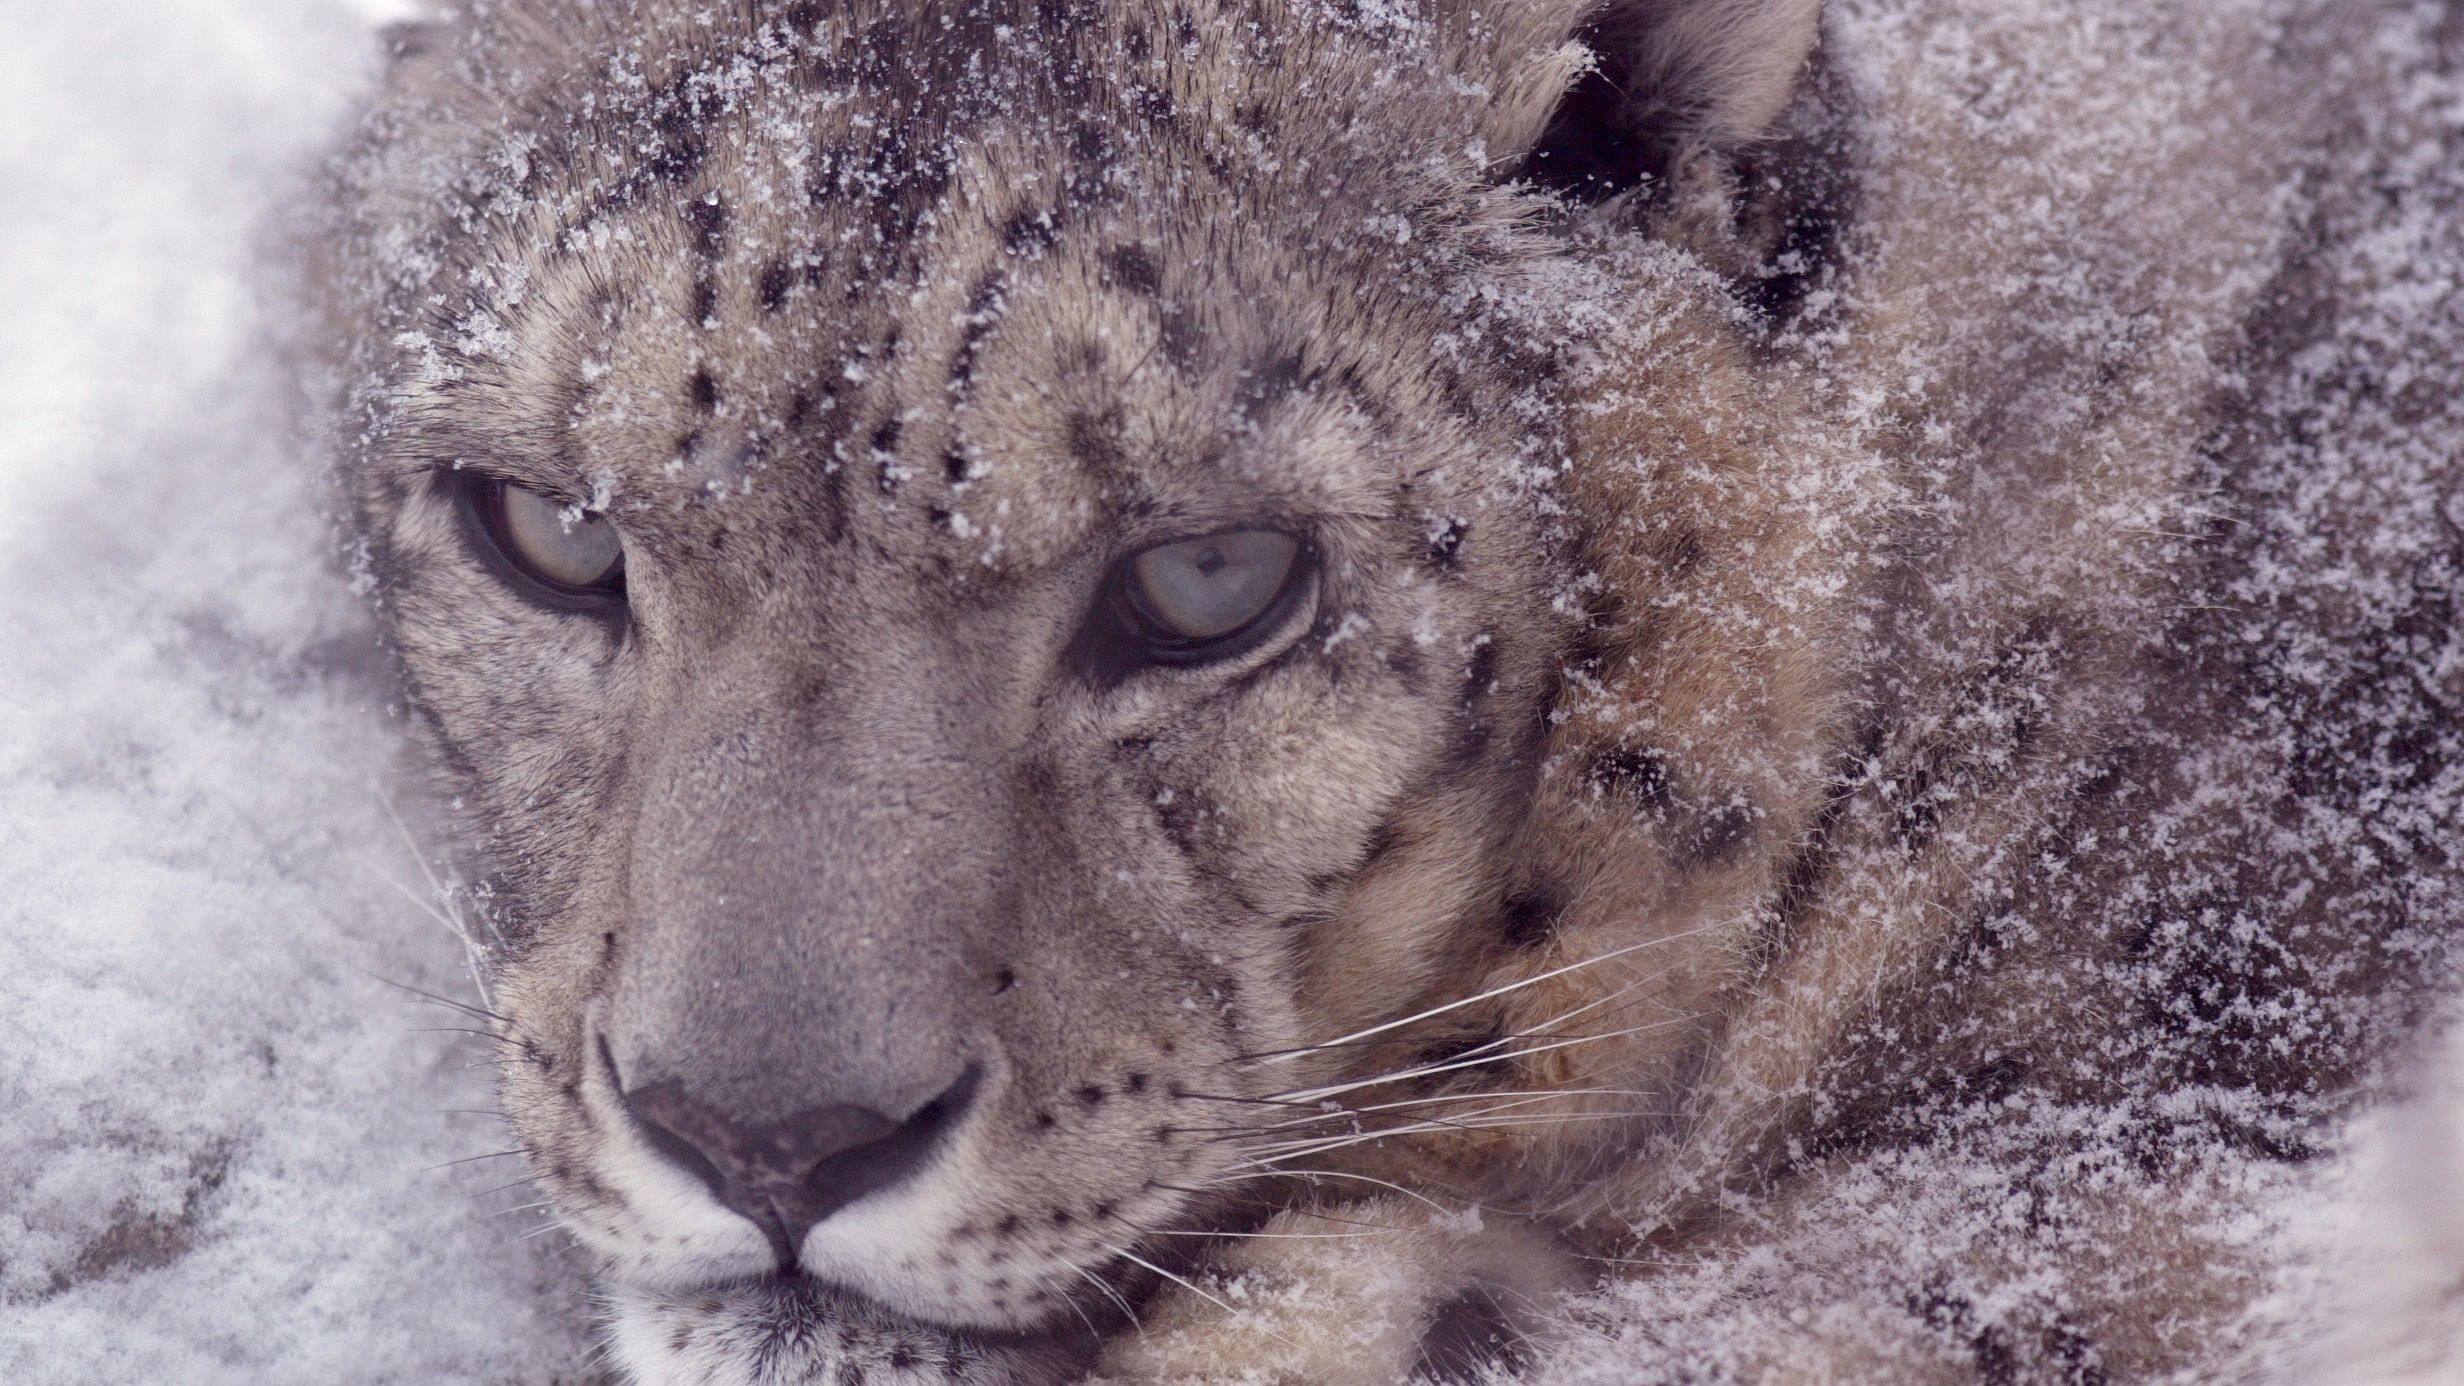 <div class="paragraphs"><p>Representative image showing a snow leopard.</p></div>